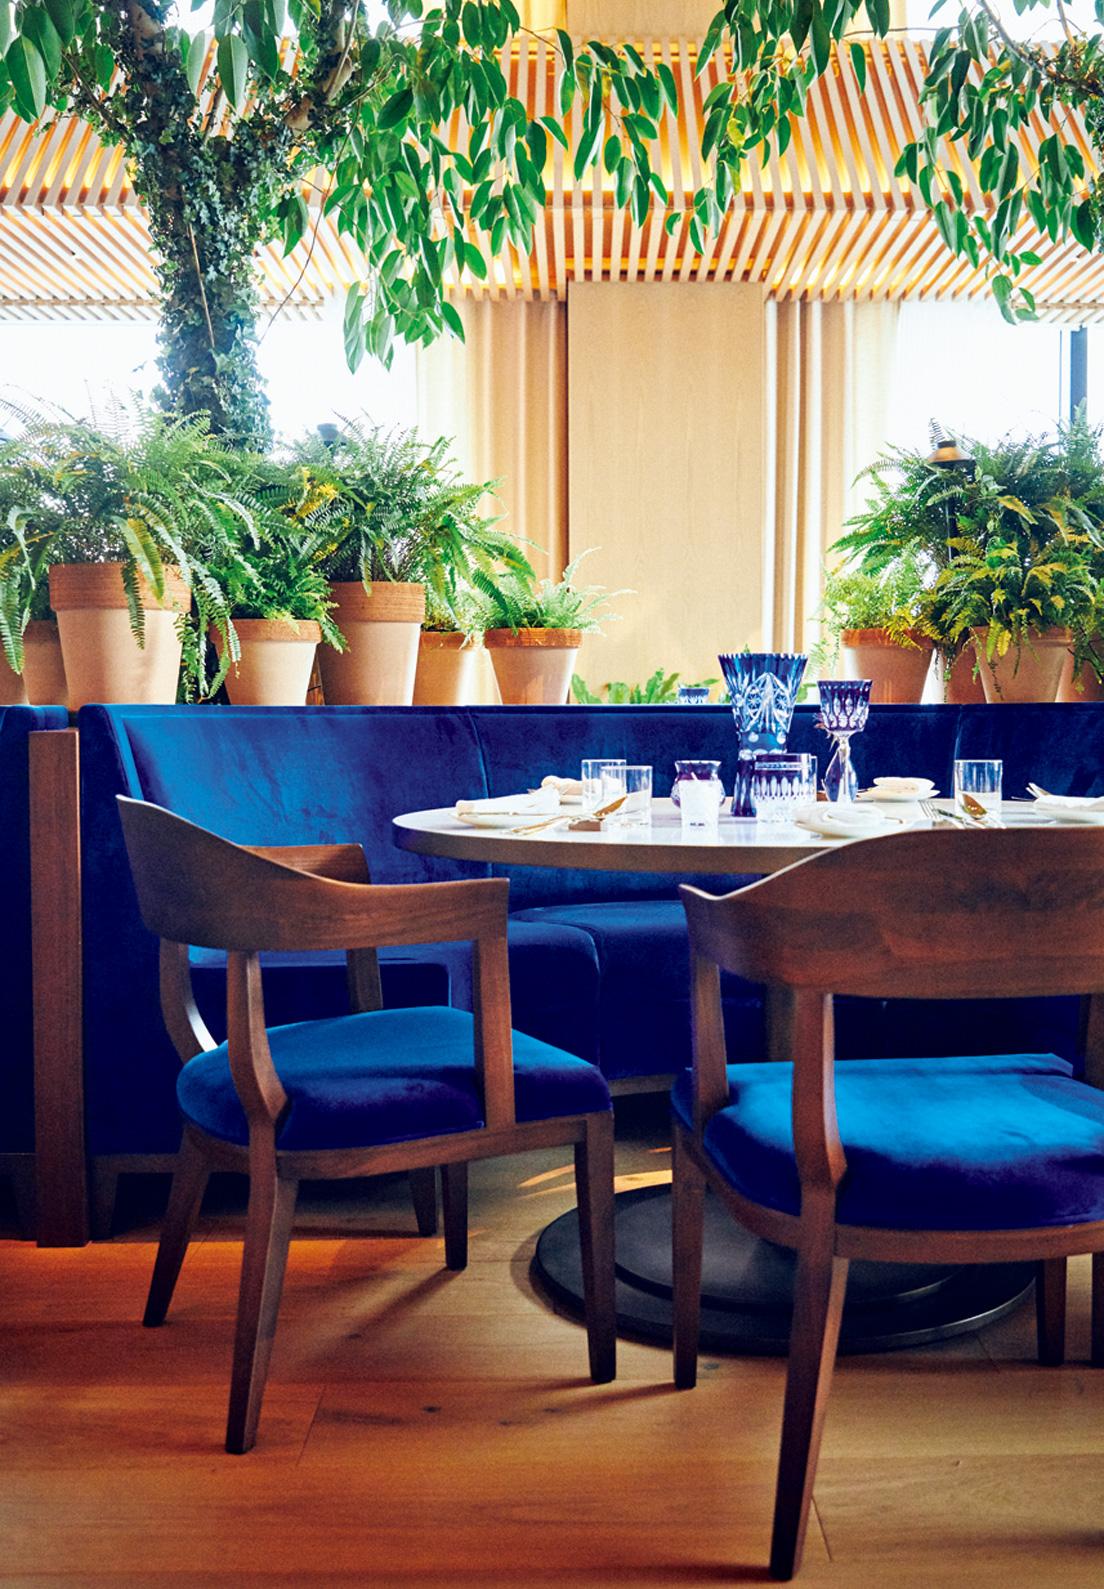 ロビーにつながる〈The Blue Room〉はブレックファースト、ランチ、ディナーが楽しめるレストラン。インテリアに用いられたインターナショナル・クラインブルーが印象的。photo_Masanori Kaneshita